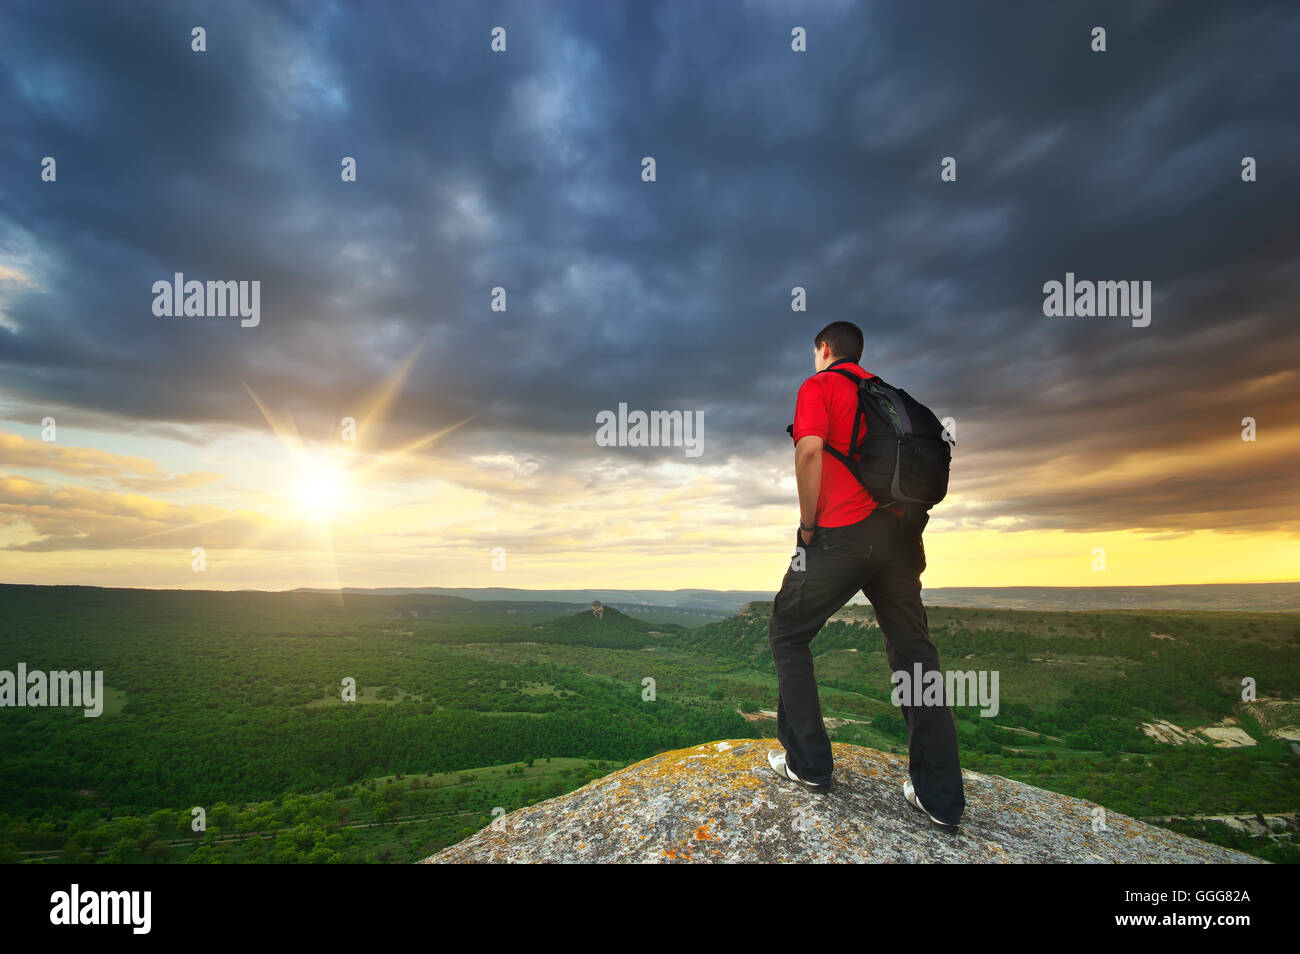 Mann am Gipfel des Berges. Element des Designs. Stockfoto